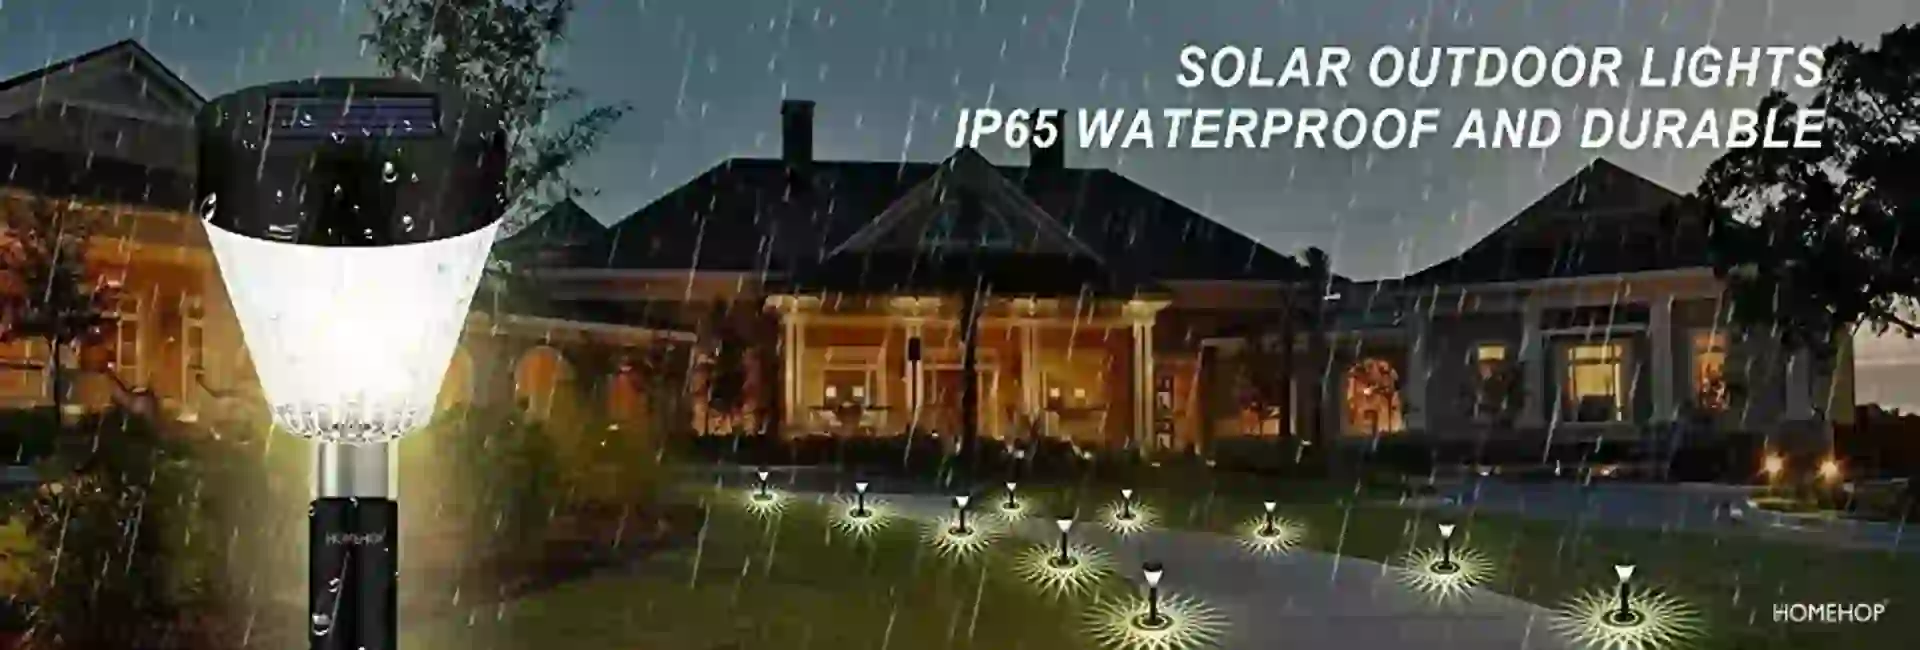 solar decorative garden lights outdoor waterproof india